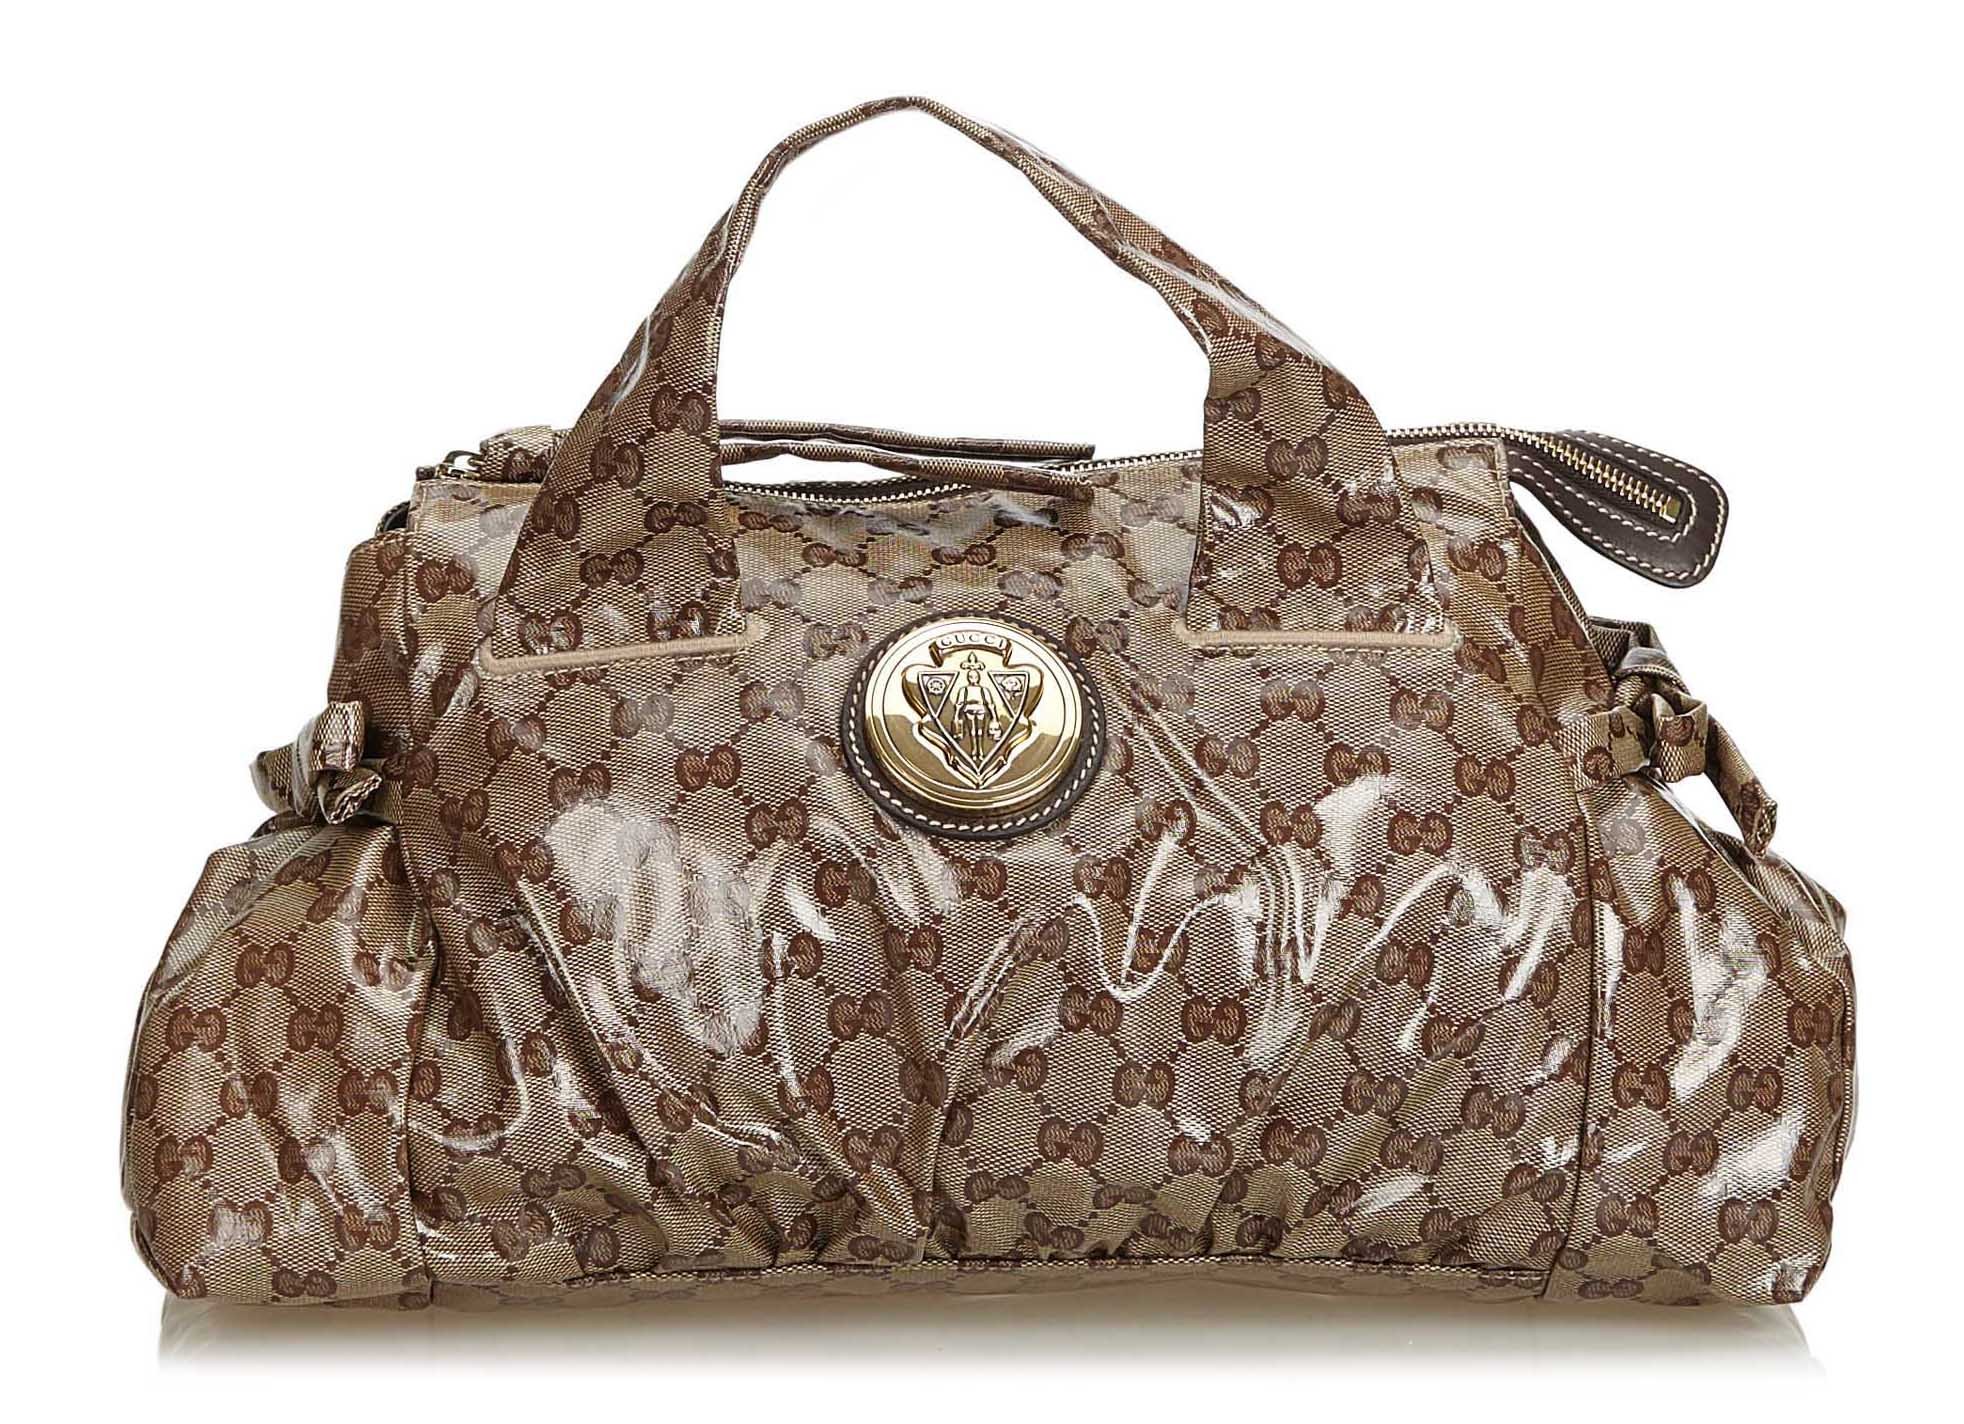 Gucci Vintage Hysteria Suede Tote Bag